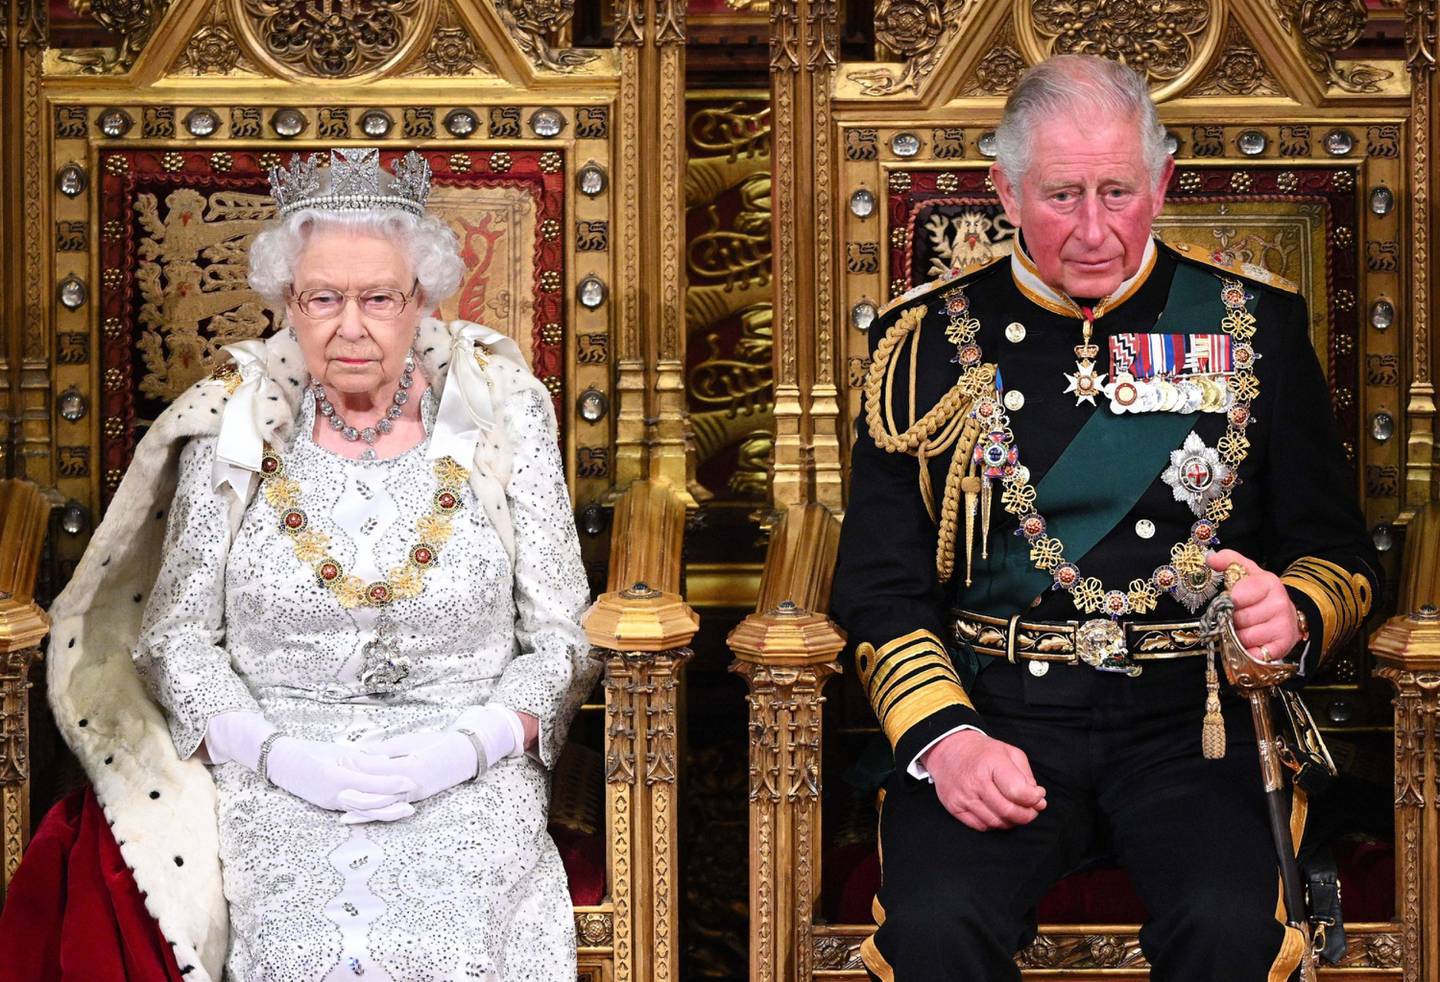 La reina celebró este fin de semana los 70 años en el trono. Foto de Paul Edwards - WPA Pool/Getty Imagesdfd